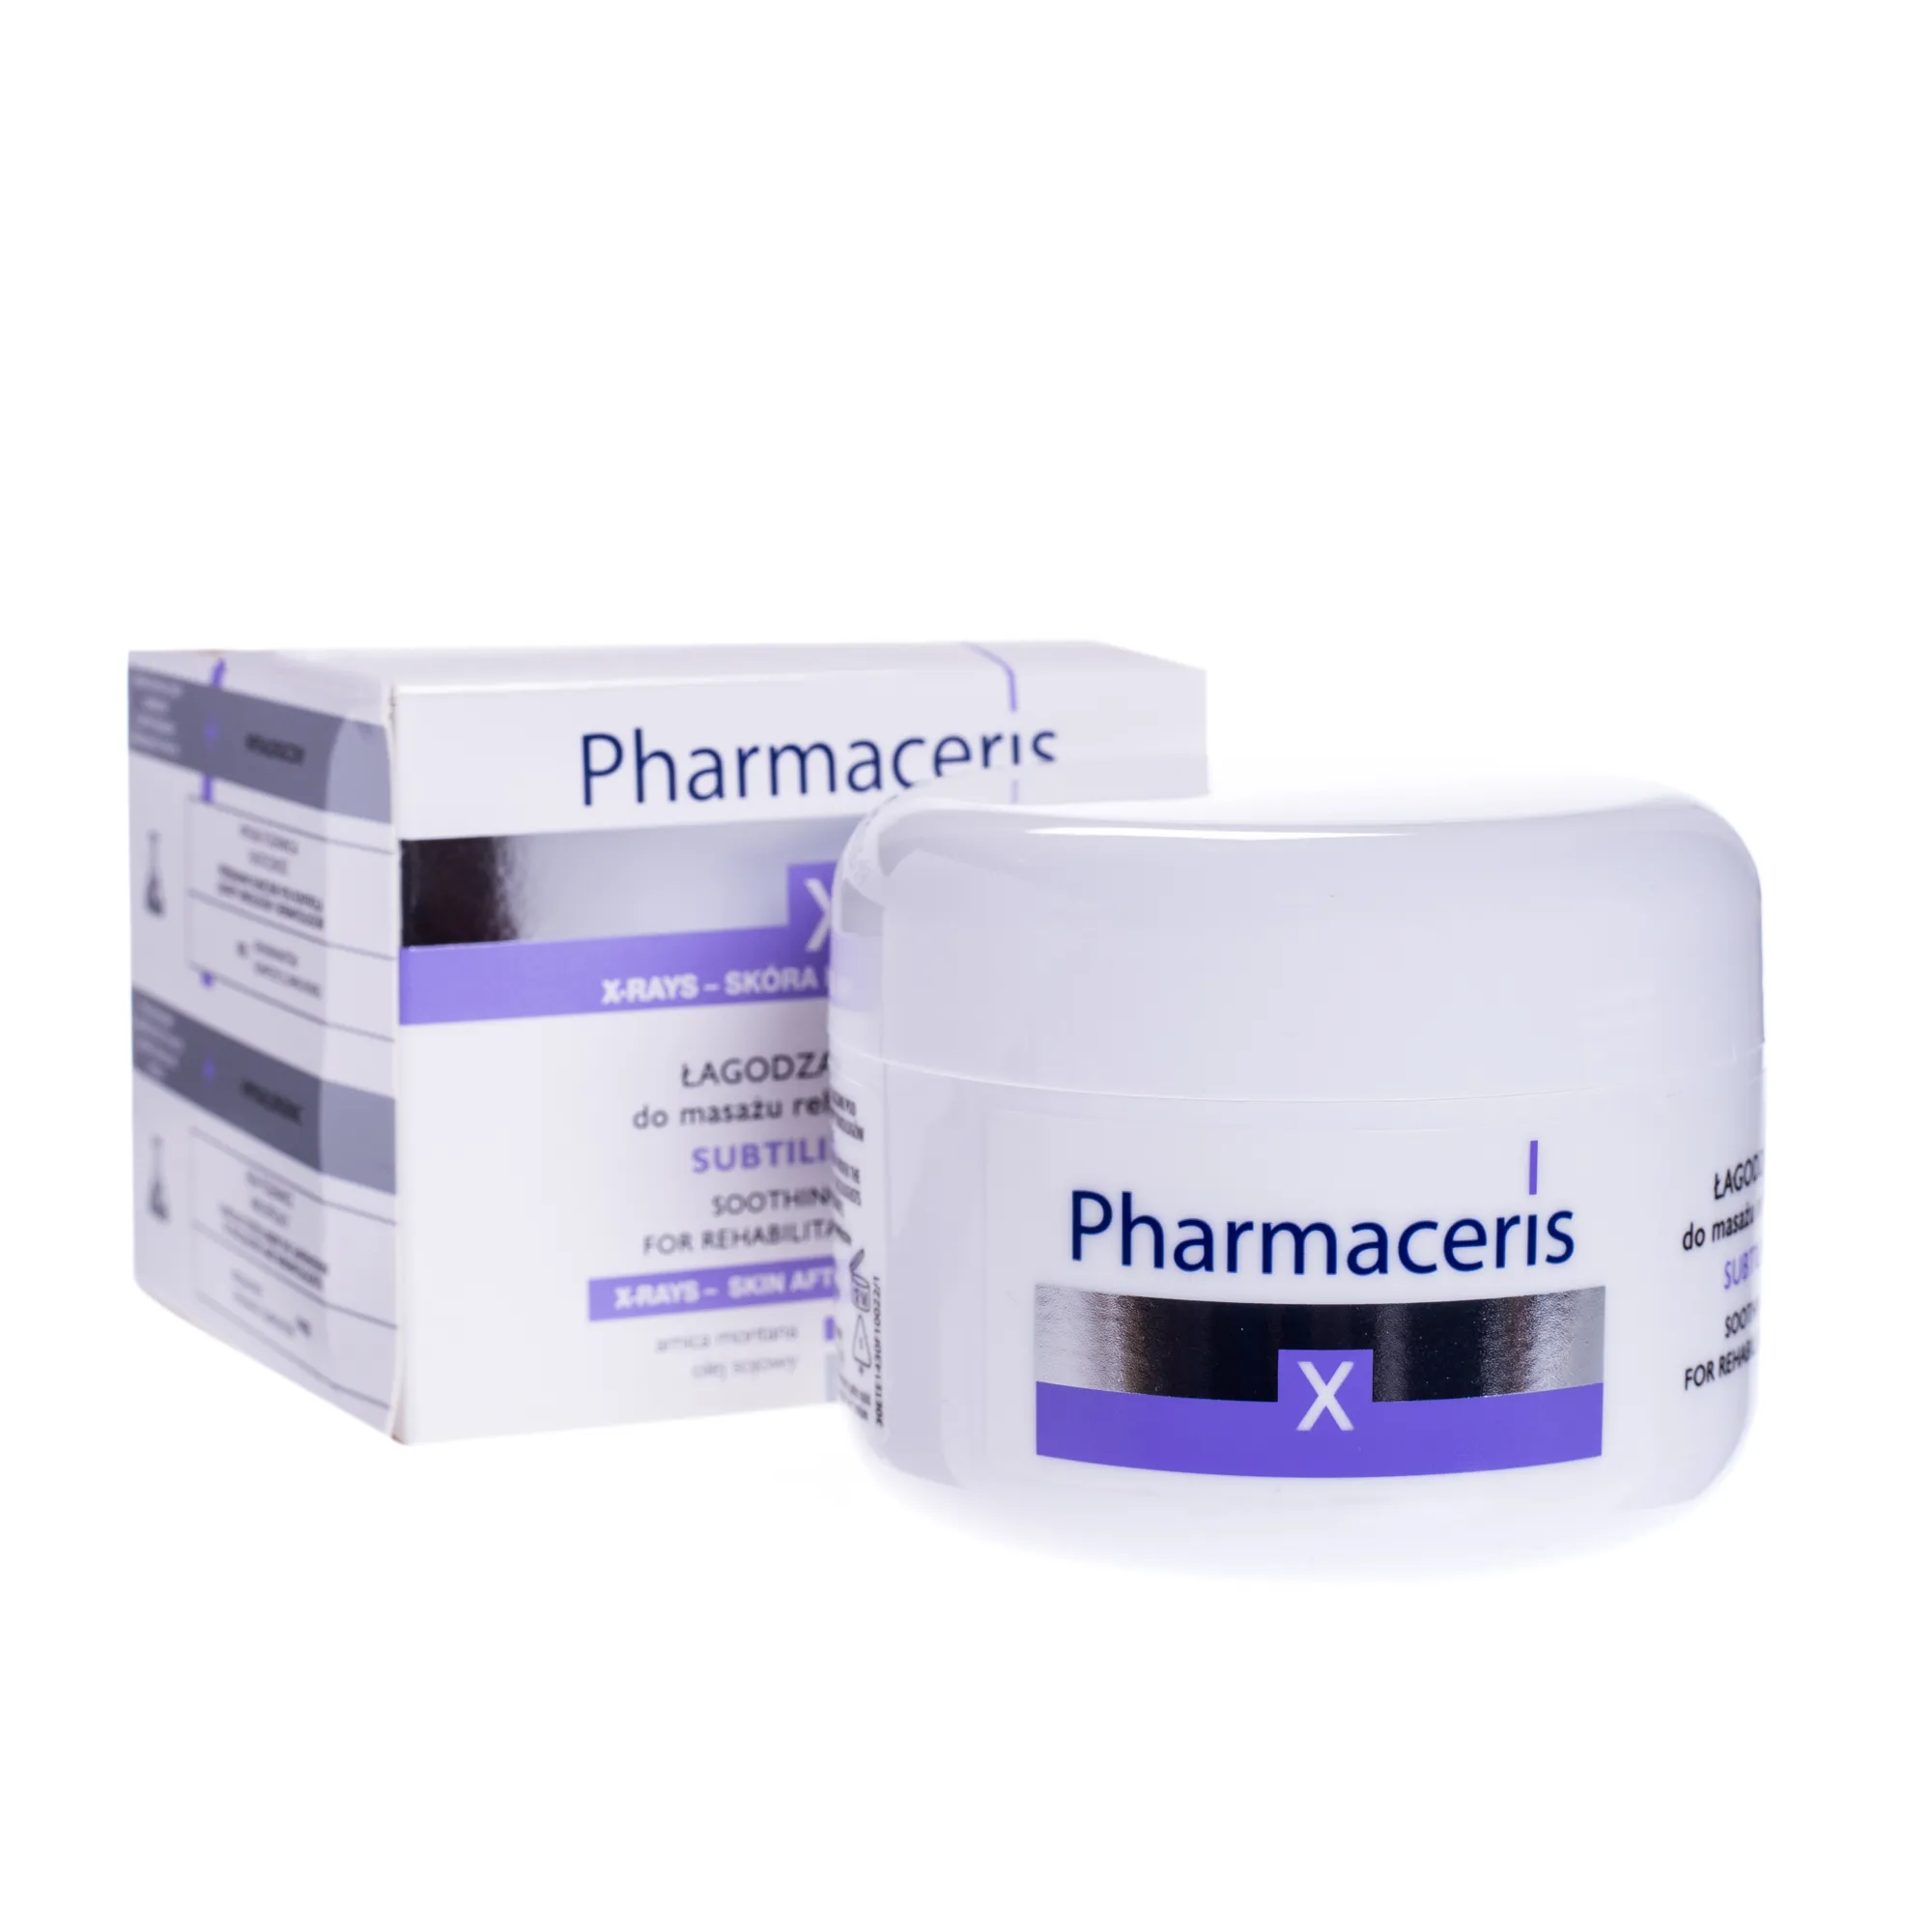 Pharmaceris X Xray-Subtilimasage, krem do masażu rehabilitacyjnego, 175 ml